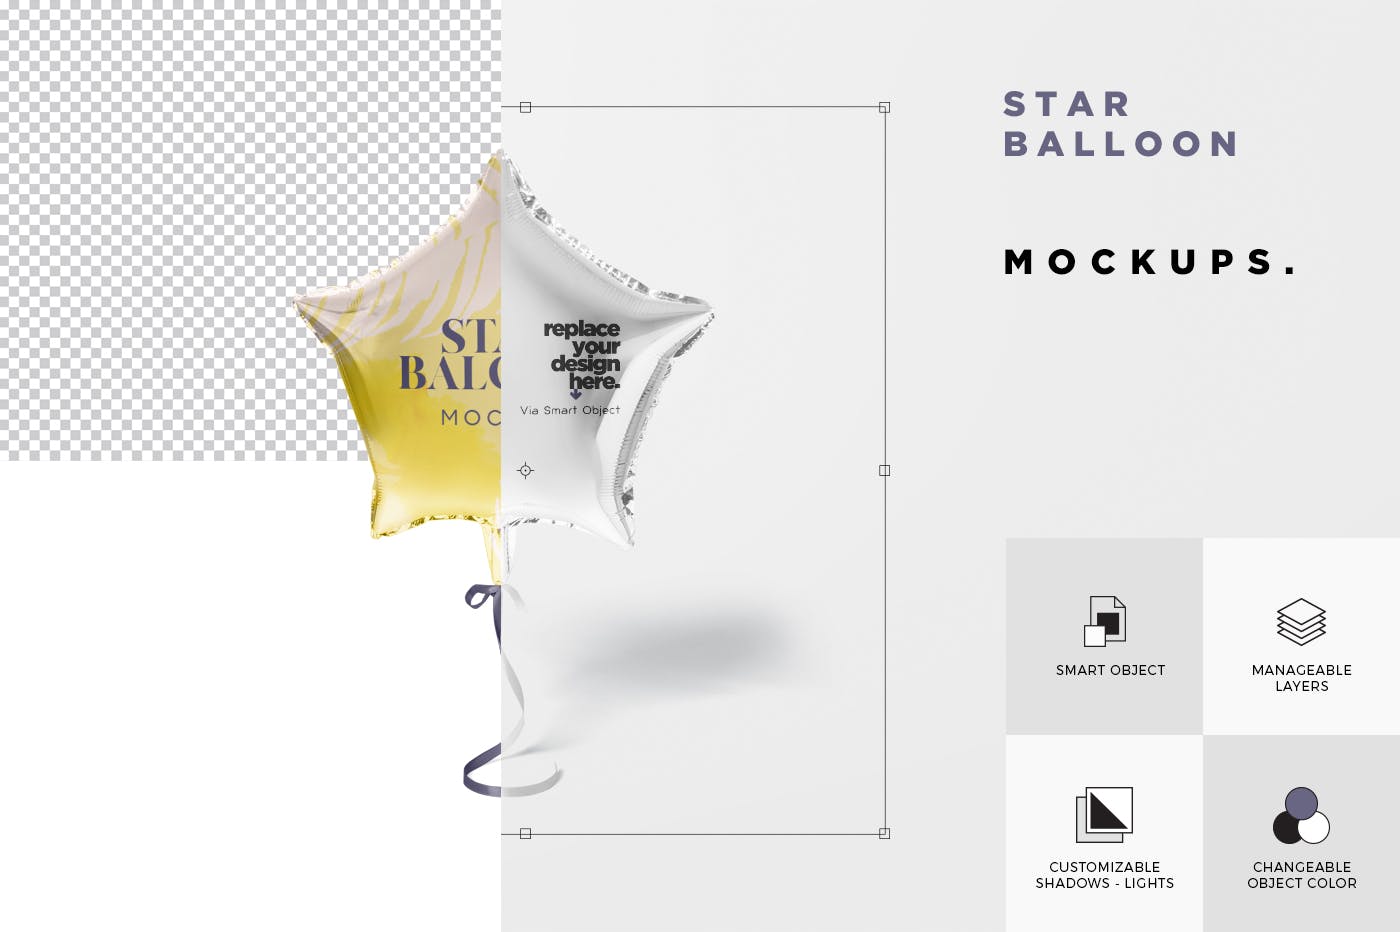 气球星星装饰物图案设计样机大洋岛精选模板 Star Balloon Mockup插图5